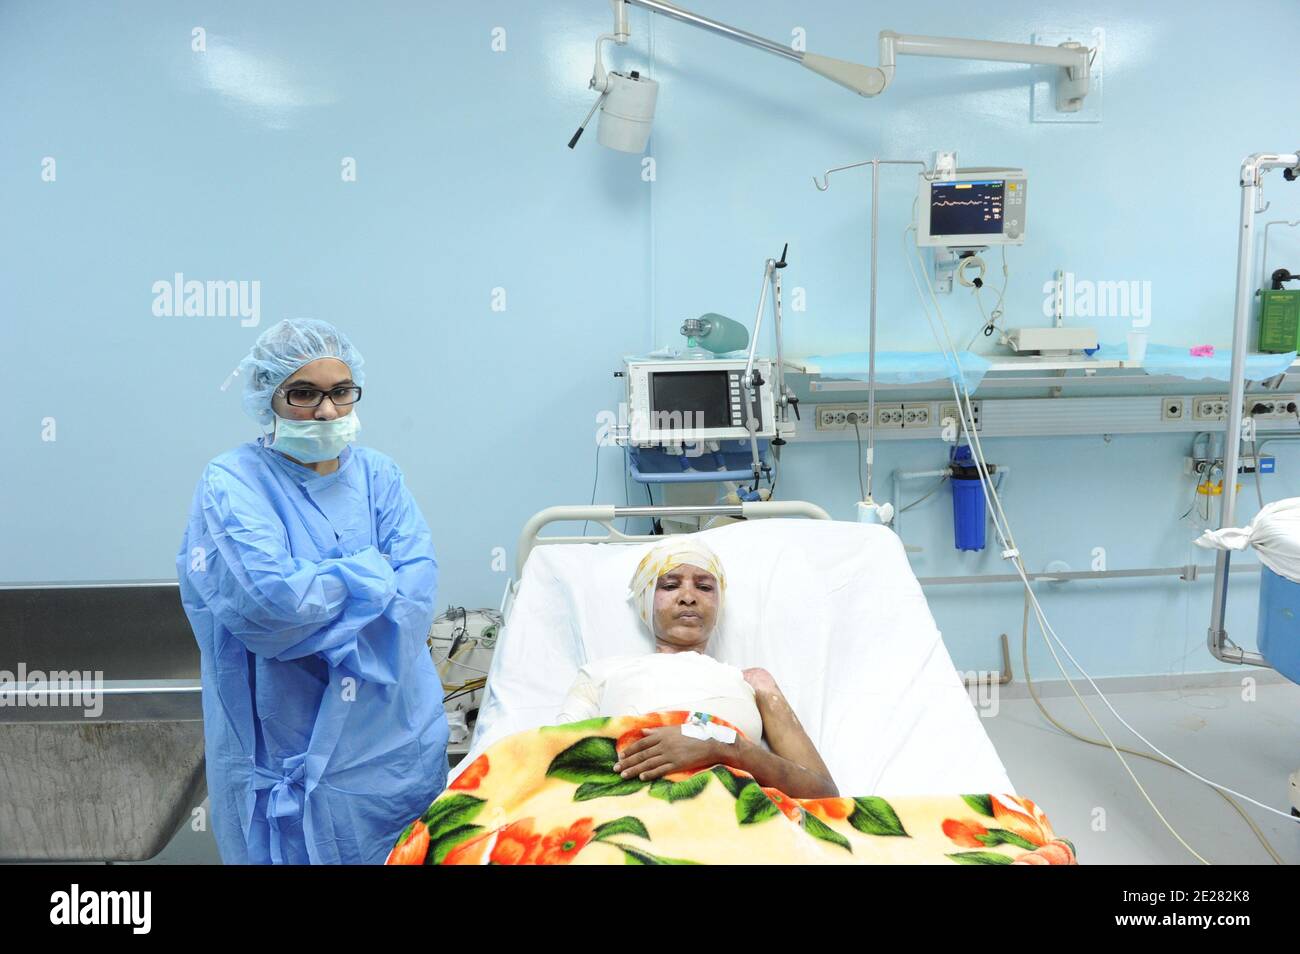 L'etiope Shweyea Mullah, ex nanna a casa di Annibal Gheddafi, e bruciato dalla moglie Aline, è visto presso l'unità di terapia intensiva presso l'ospedale bruciato di Tripoli, Libia, il 1 settembre 2011. Foto di Ammar Abd Rabbo/ABACAPRESS.COM Foto Stock